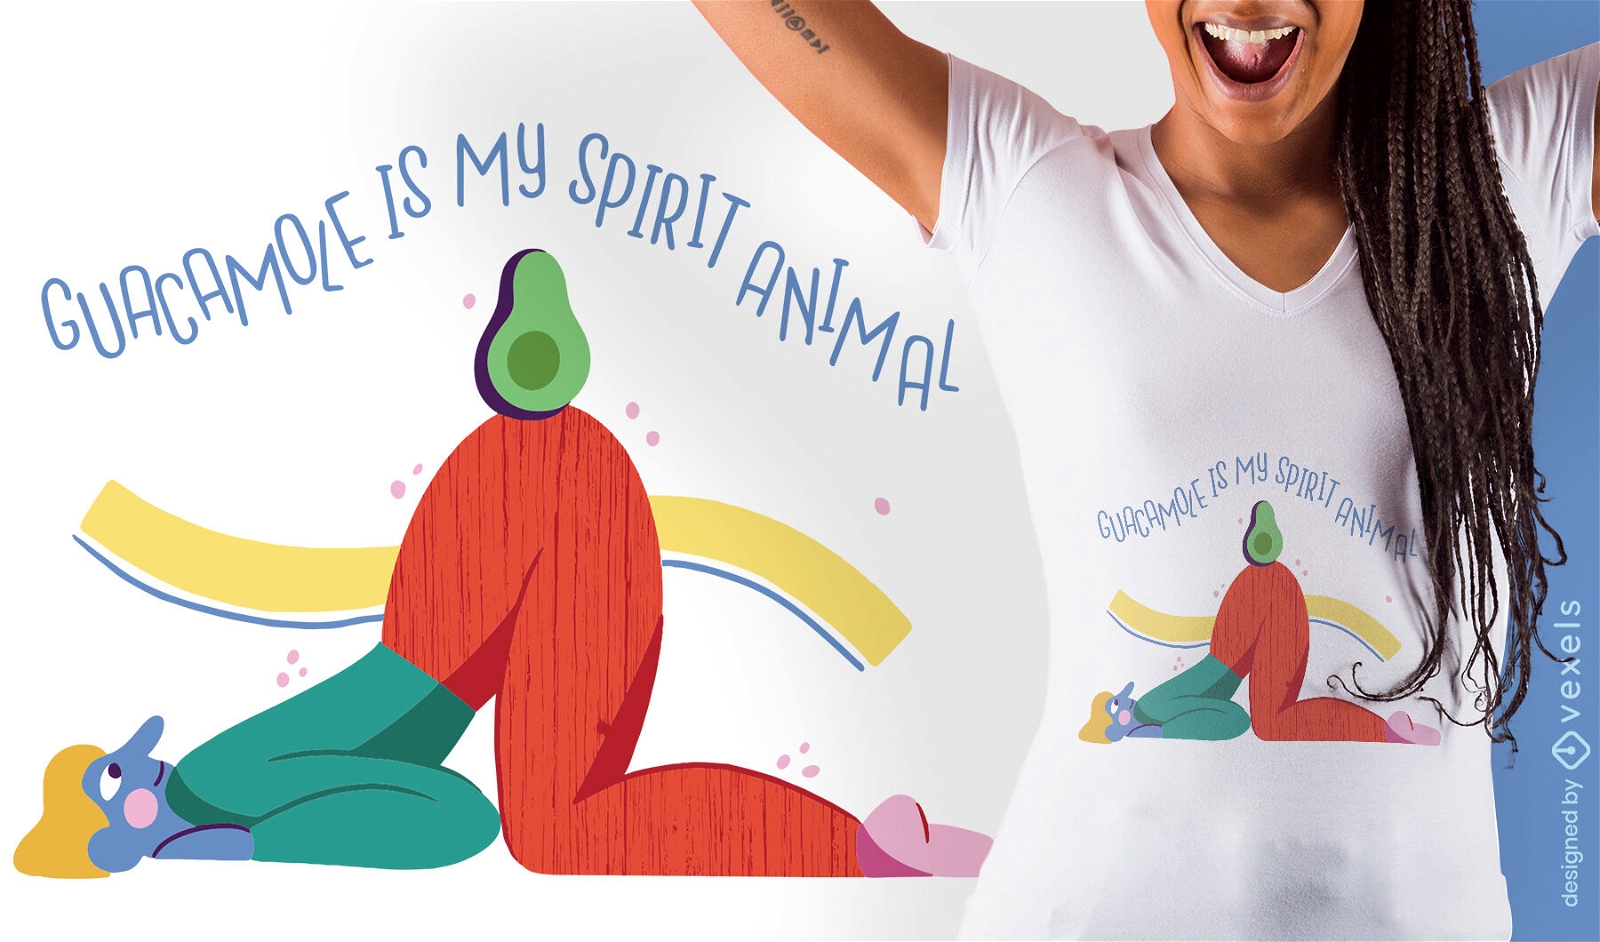 Divertido diseño de camiseta vegana de guacamole.